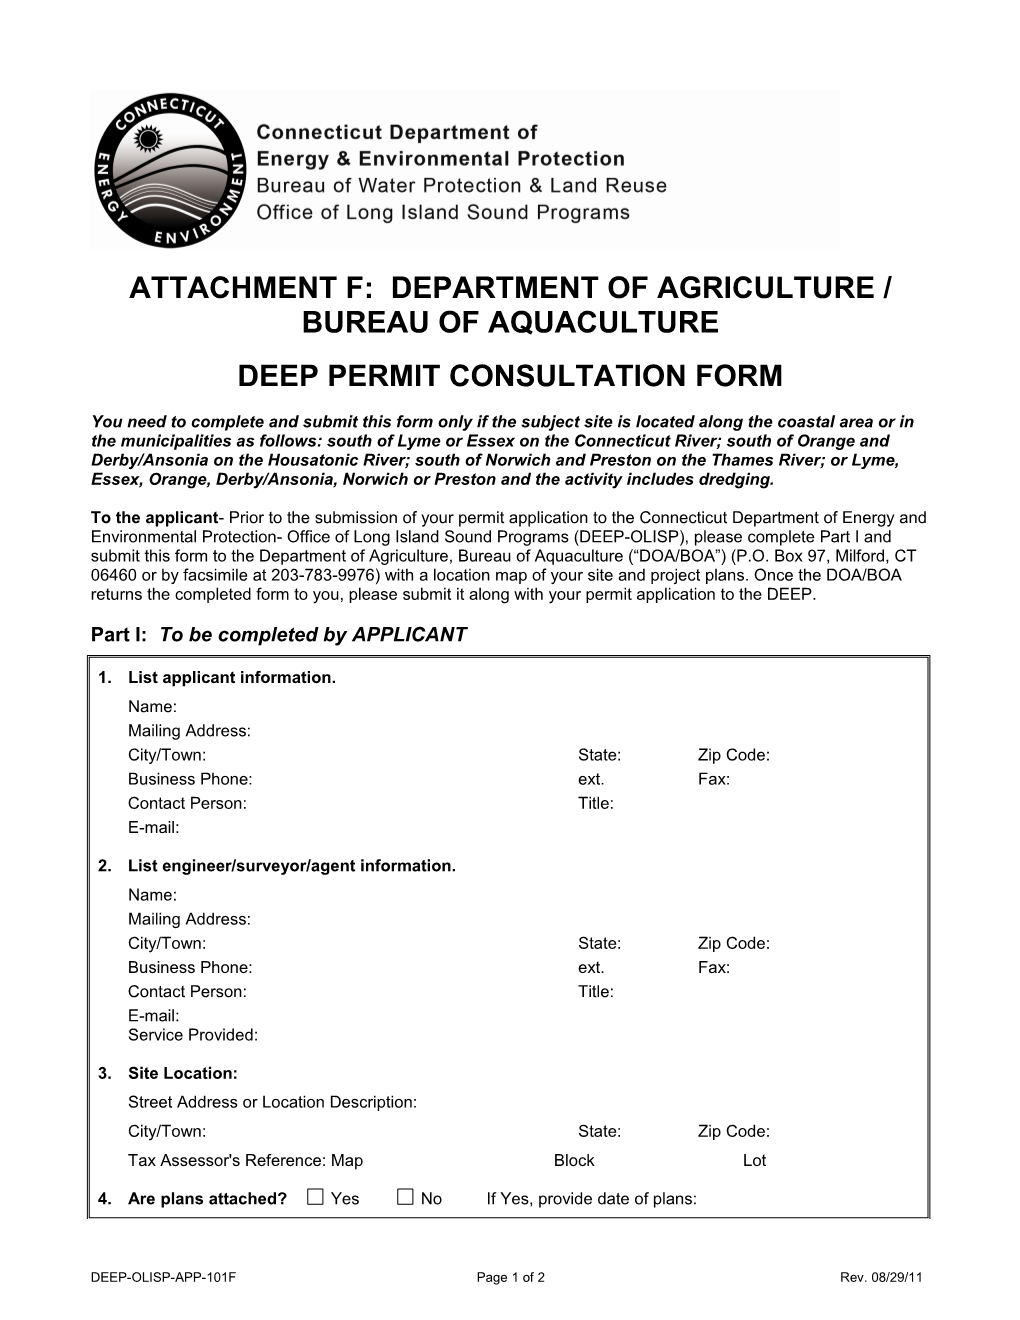 Attachment F: Department of Agriculture/Bureau of Aquaculture DEP Permit Consultation Form